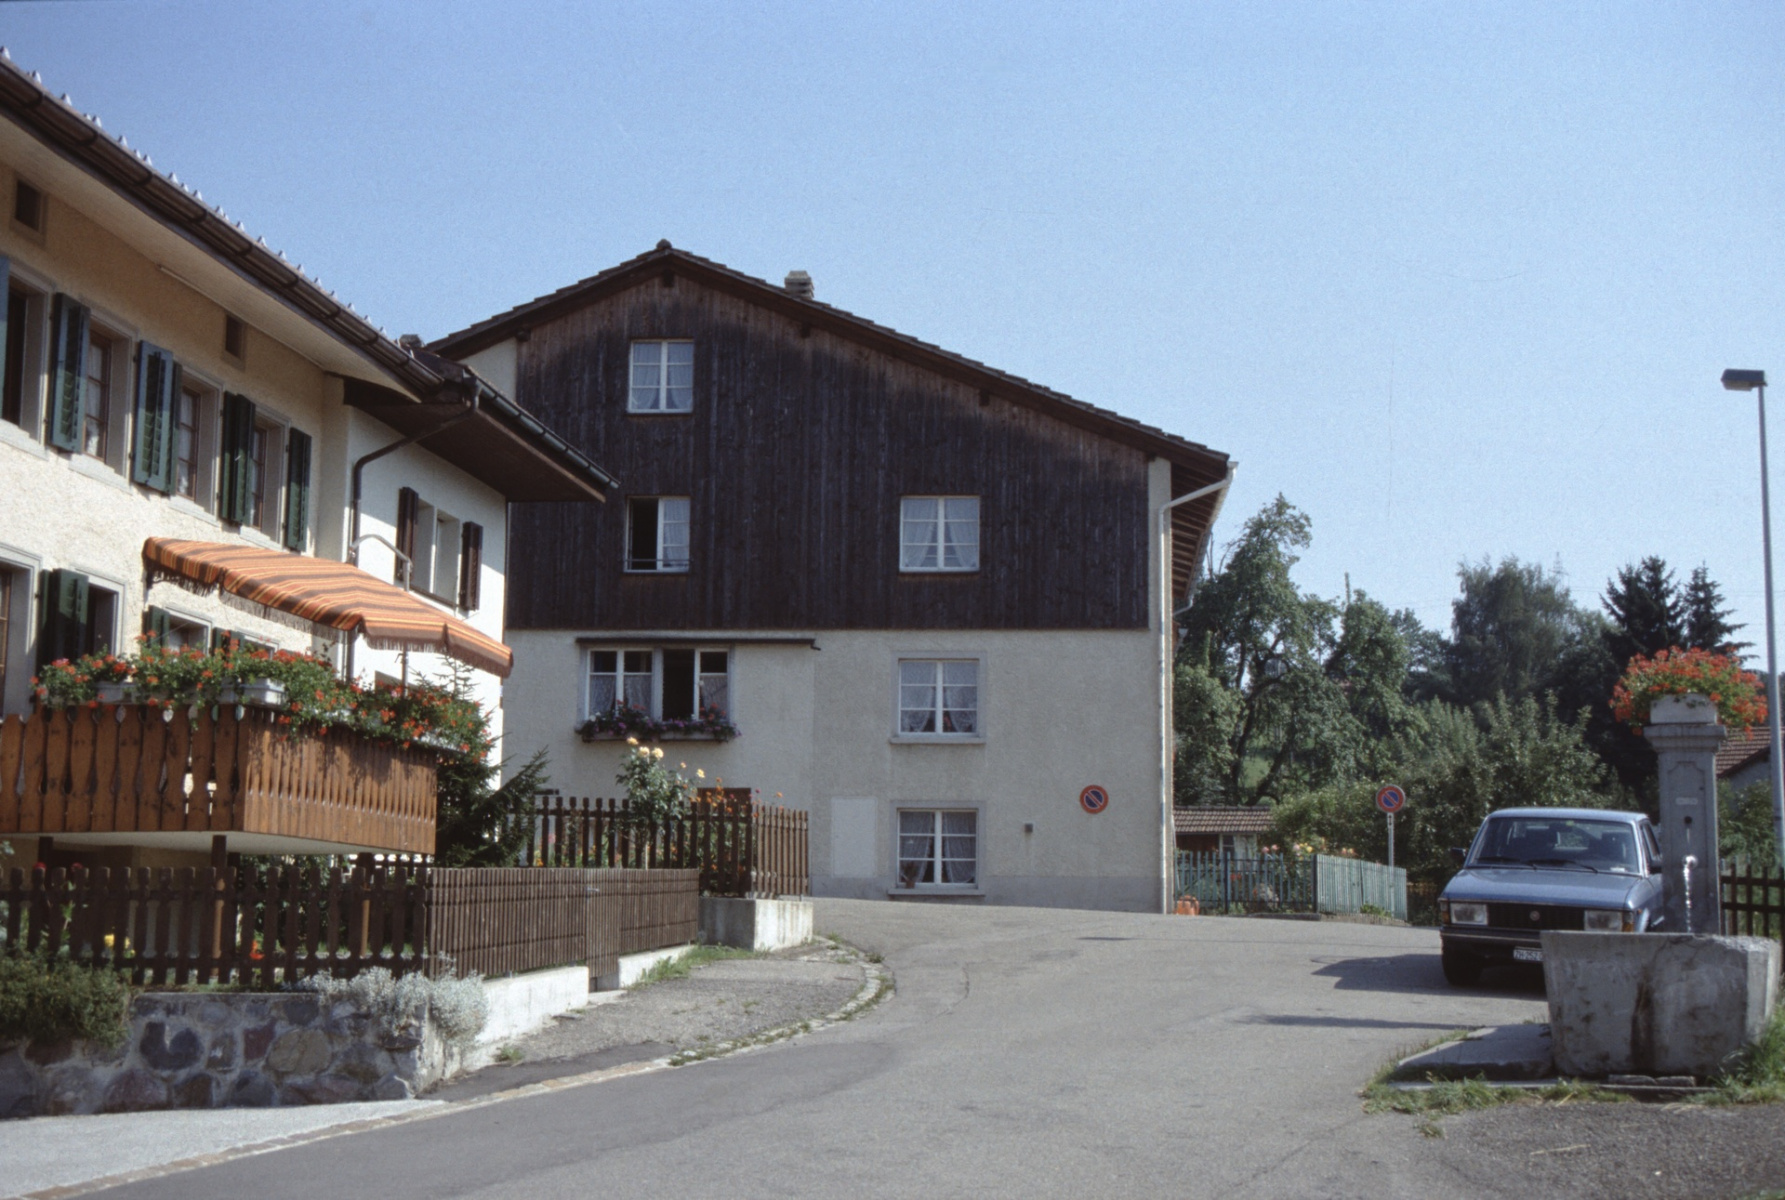 Oberdorf Haus mit Laden Frau Schaub